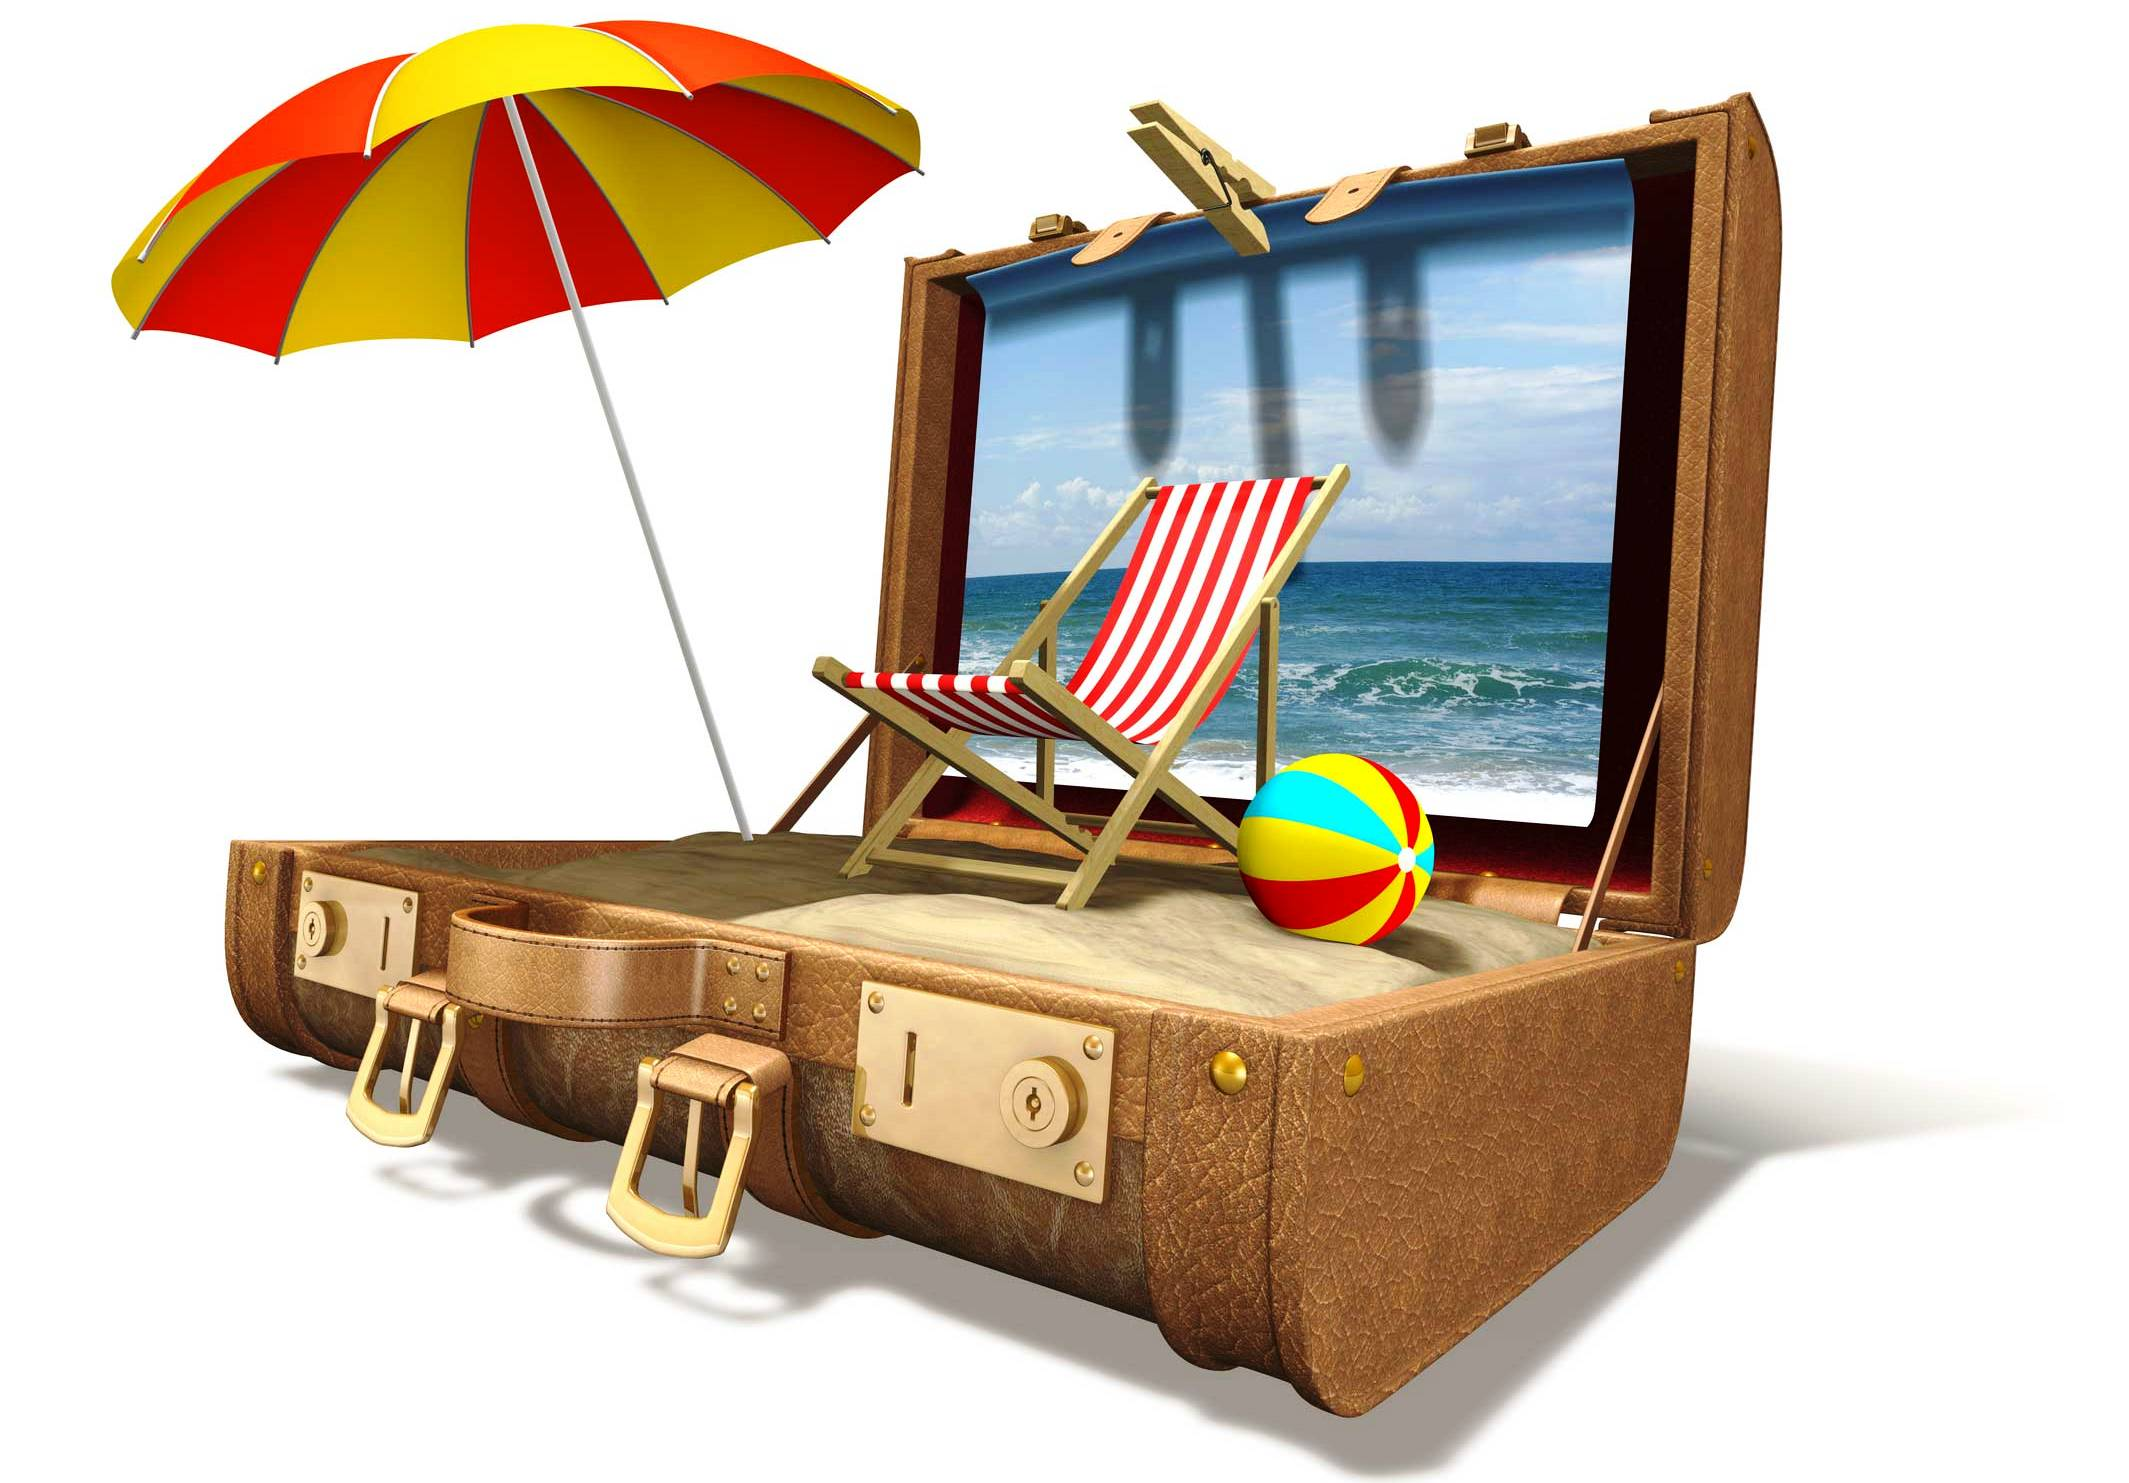 ‘Fusie tussen D-reizen en VakantieXperts ophanden’